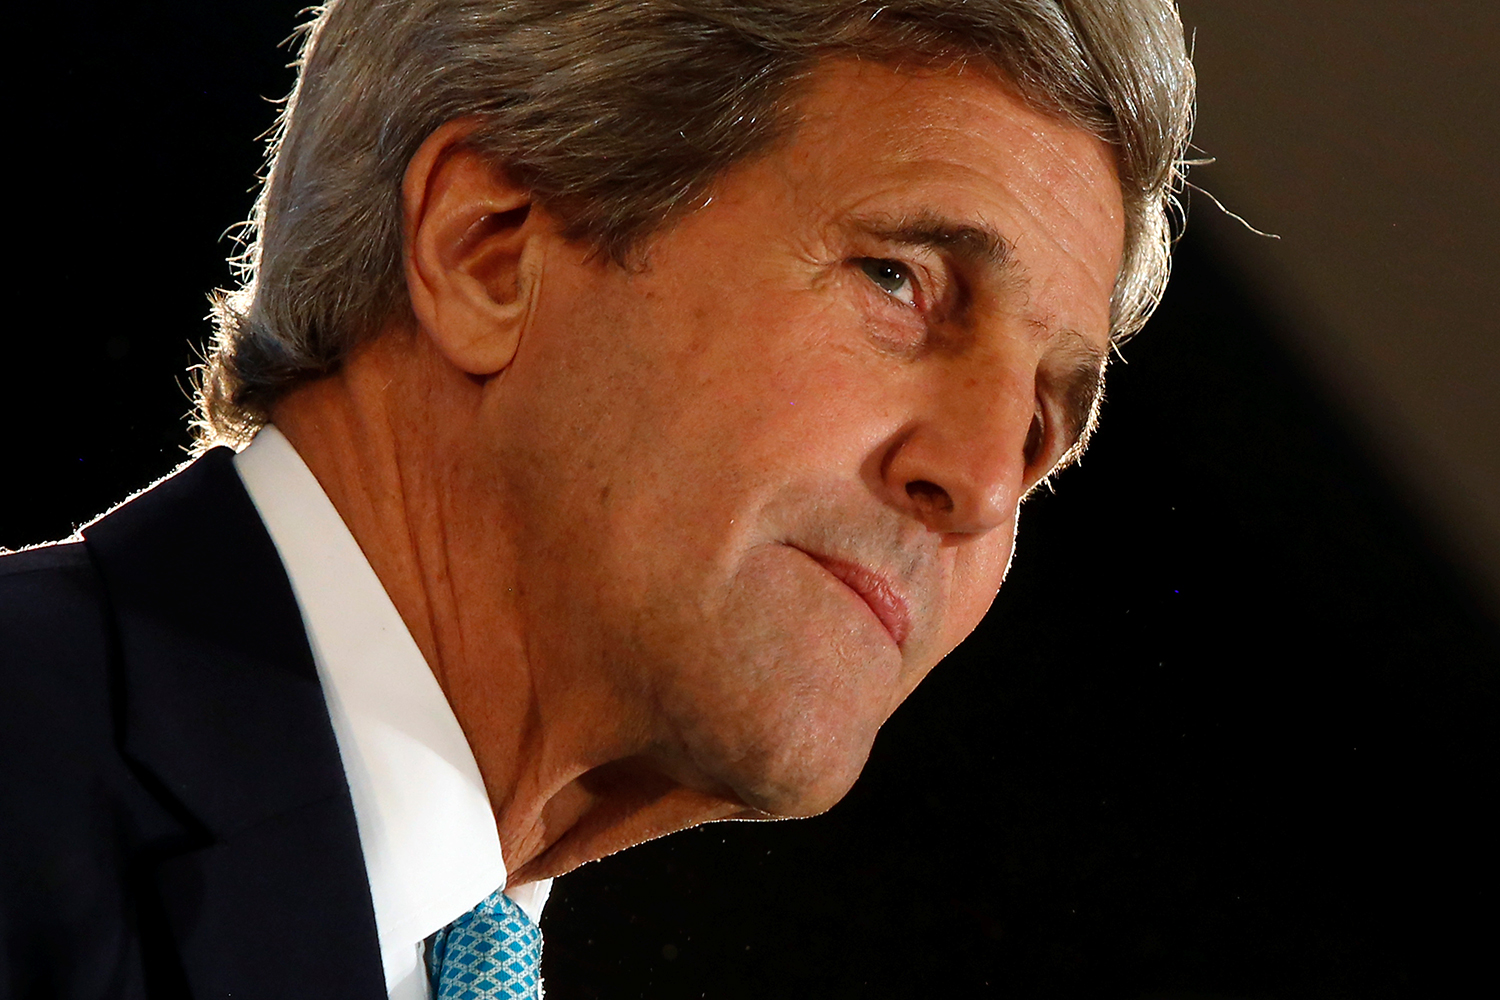 Kerry menta el derecho a la guerra: "podíamos haber derribado los dos cazas rusos"